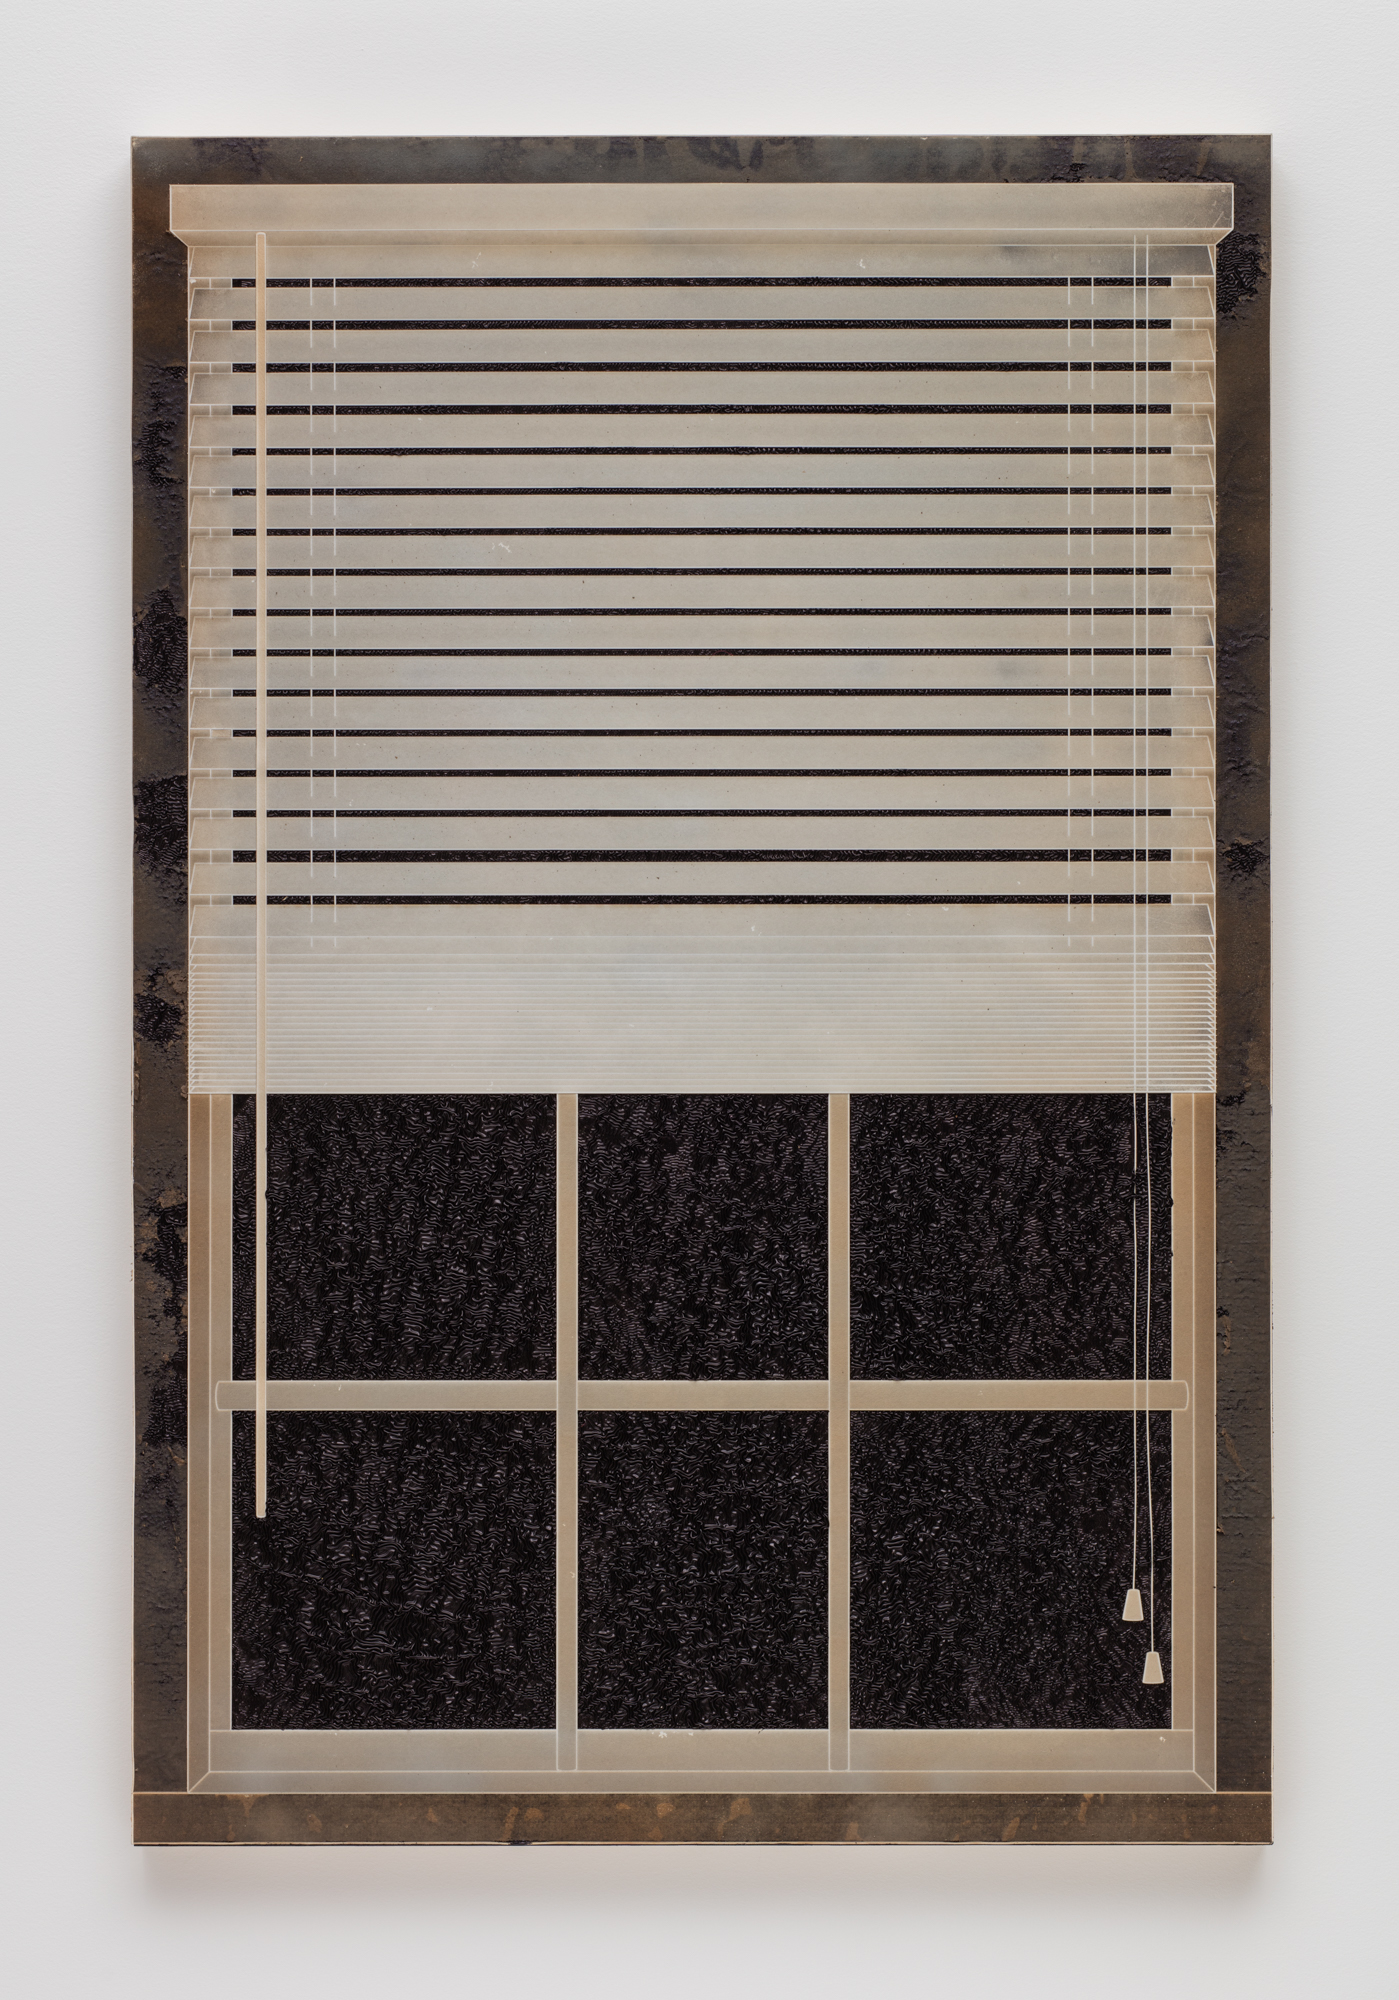 Analia Saban，《百叶窗》，百叶窗，2017 年。木板上墨水上的激光雕刻纸。 152.4 x 101.6 x 5.2 厘米。照片由布赖恩福雷斯特拍摄。